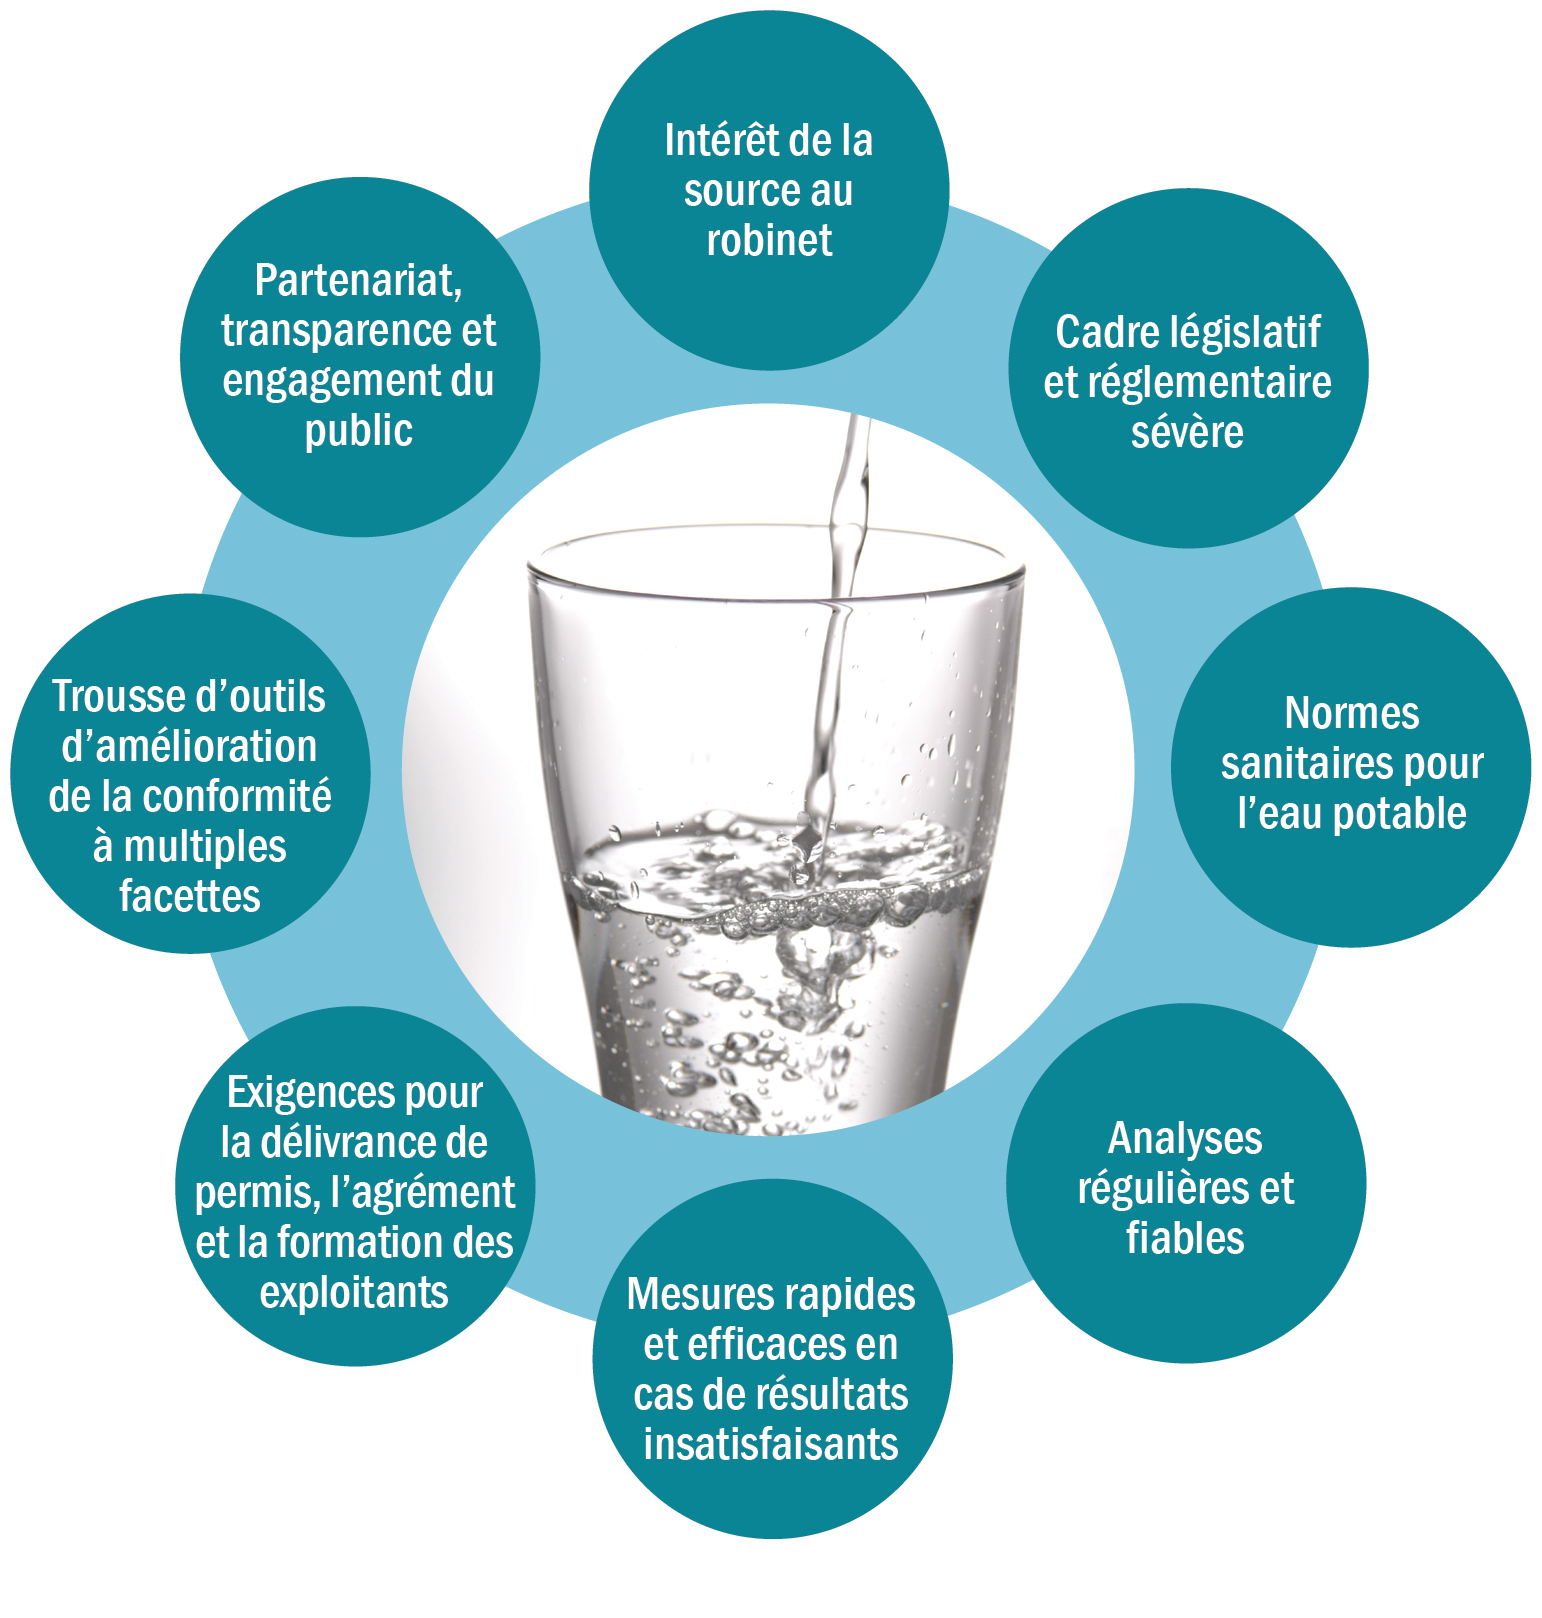 Graphique représentant les composantes du filet de sécurité pour l’eau potable en Ontario. Huit éléments forment un cercle illustrant leur interaction visant à préserver, ensemble, l’eau potable de la source au robinet. Voici les composantes de ce cercle : Intérêt de la source au robinet, Cadre législatif et réglementaire sévère, Normes sanitaires pour l’eau potable, Analyses régulières et fiables, Mesures rapides et efficaces en cas de résultats insatisfaisants, Exigences pour la délivrance de permis, l’agrément et la formation des exploitants, Trousse d’outils d’amélioration de la conformité à multiples facettes, Partenariat, transparence et engagement du public.